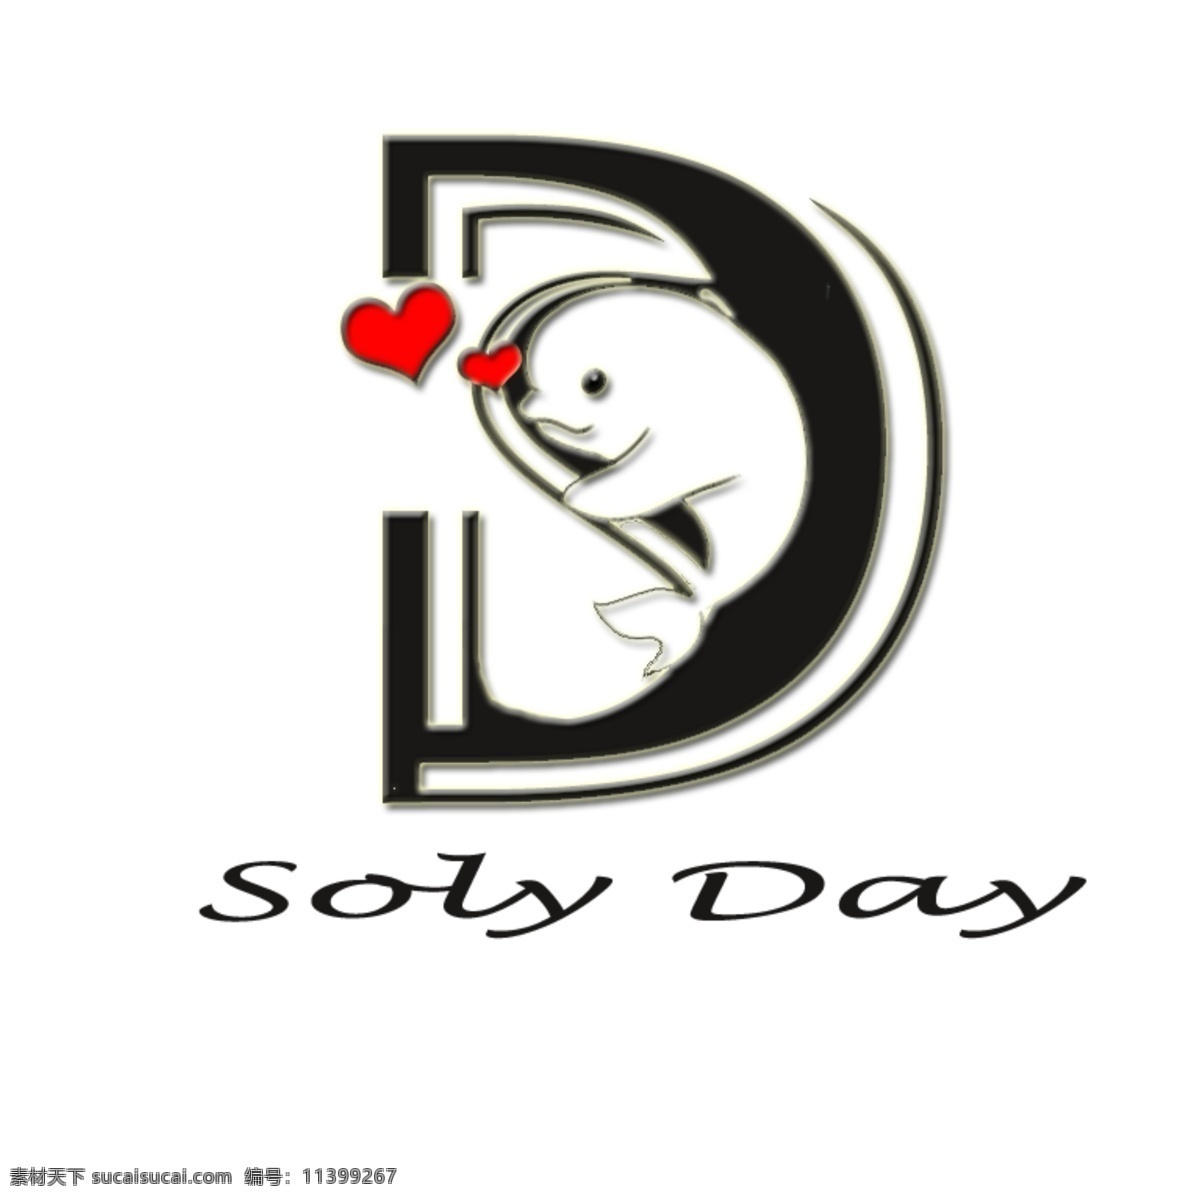 可爱logo 字母s 字母d 可爱的白鲸 英文单词 solo day